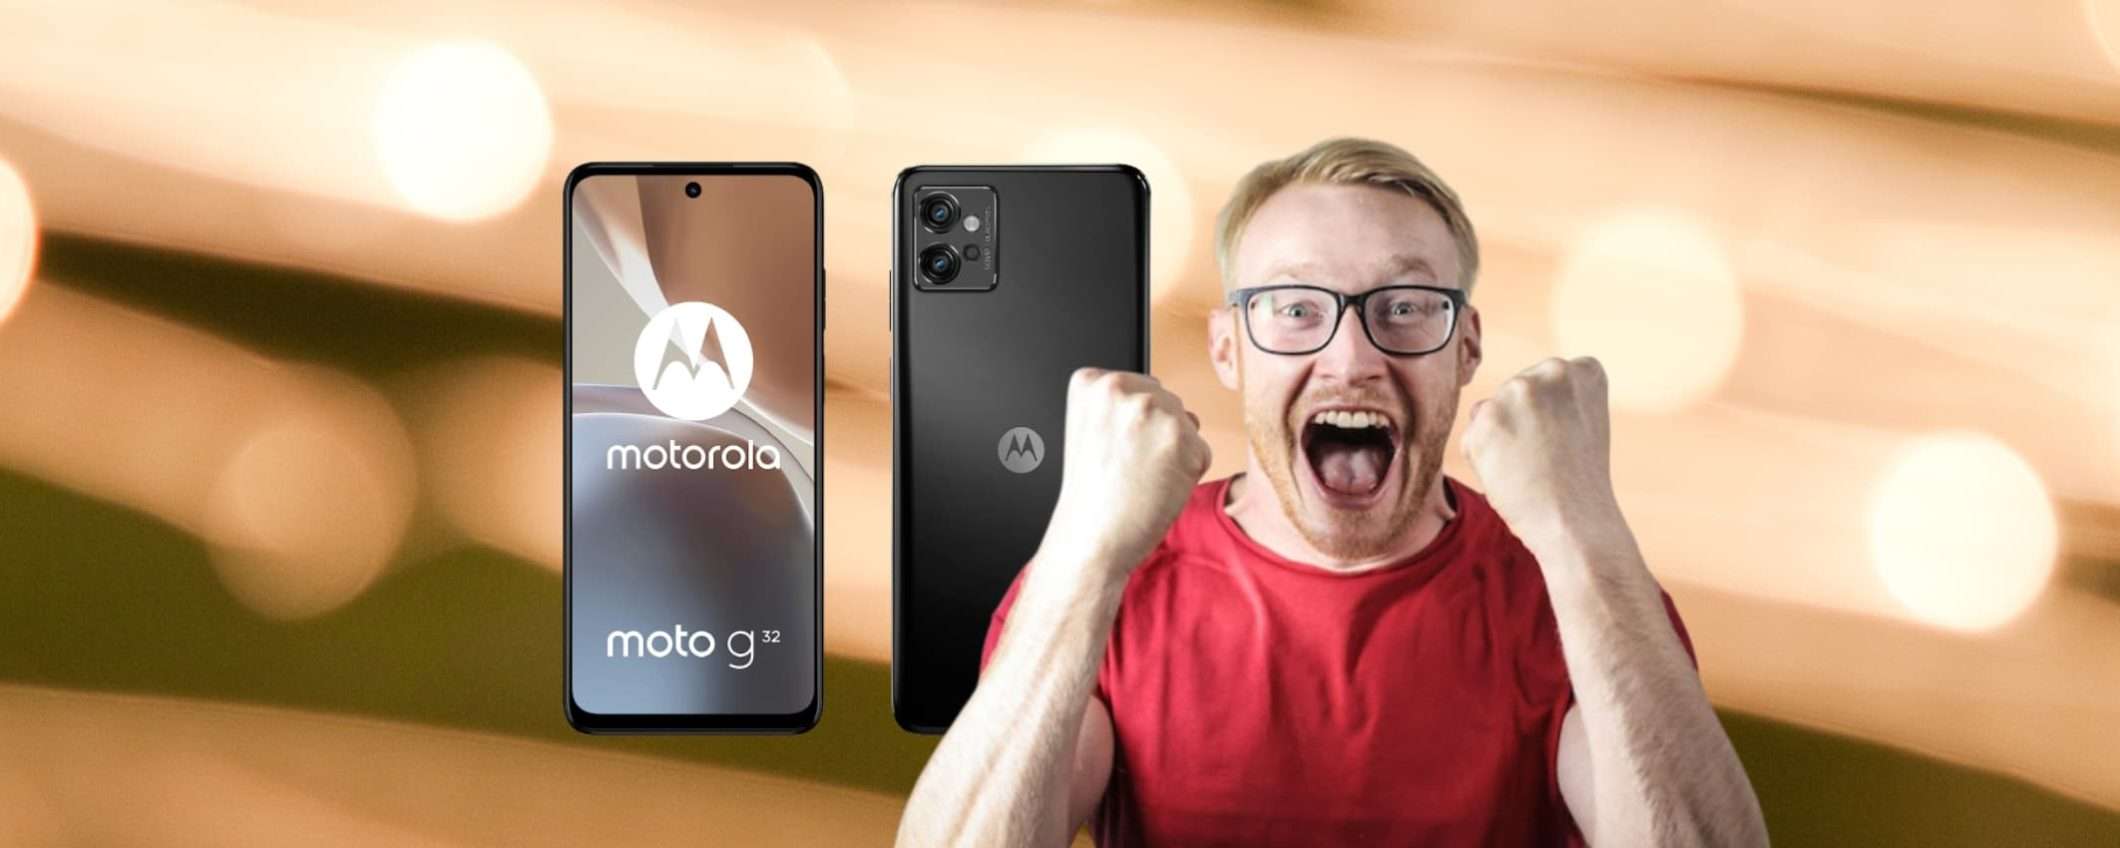 Il RED FRIDAY di MediaWorld prosegue col Motorola Moto G32 a 141,99 euro